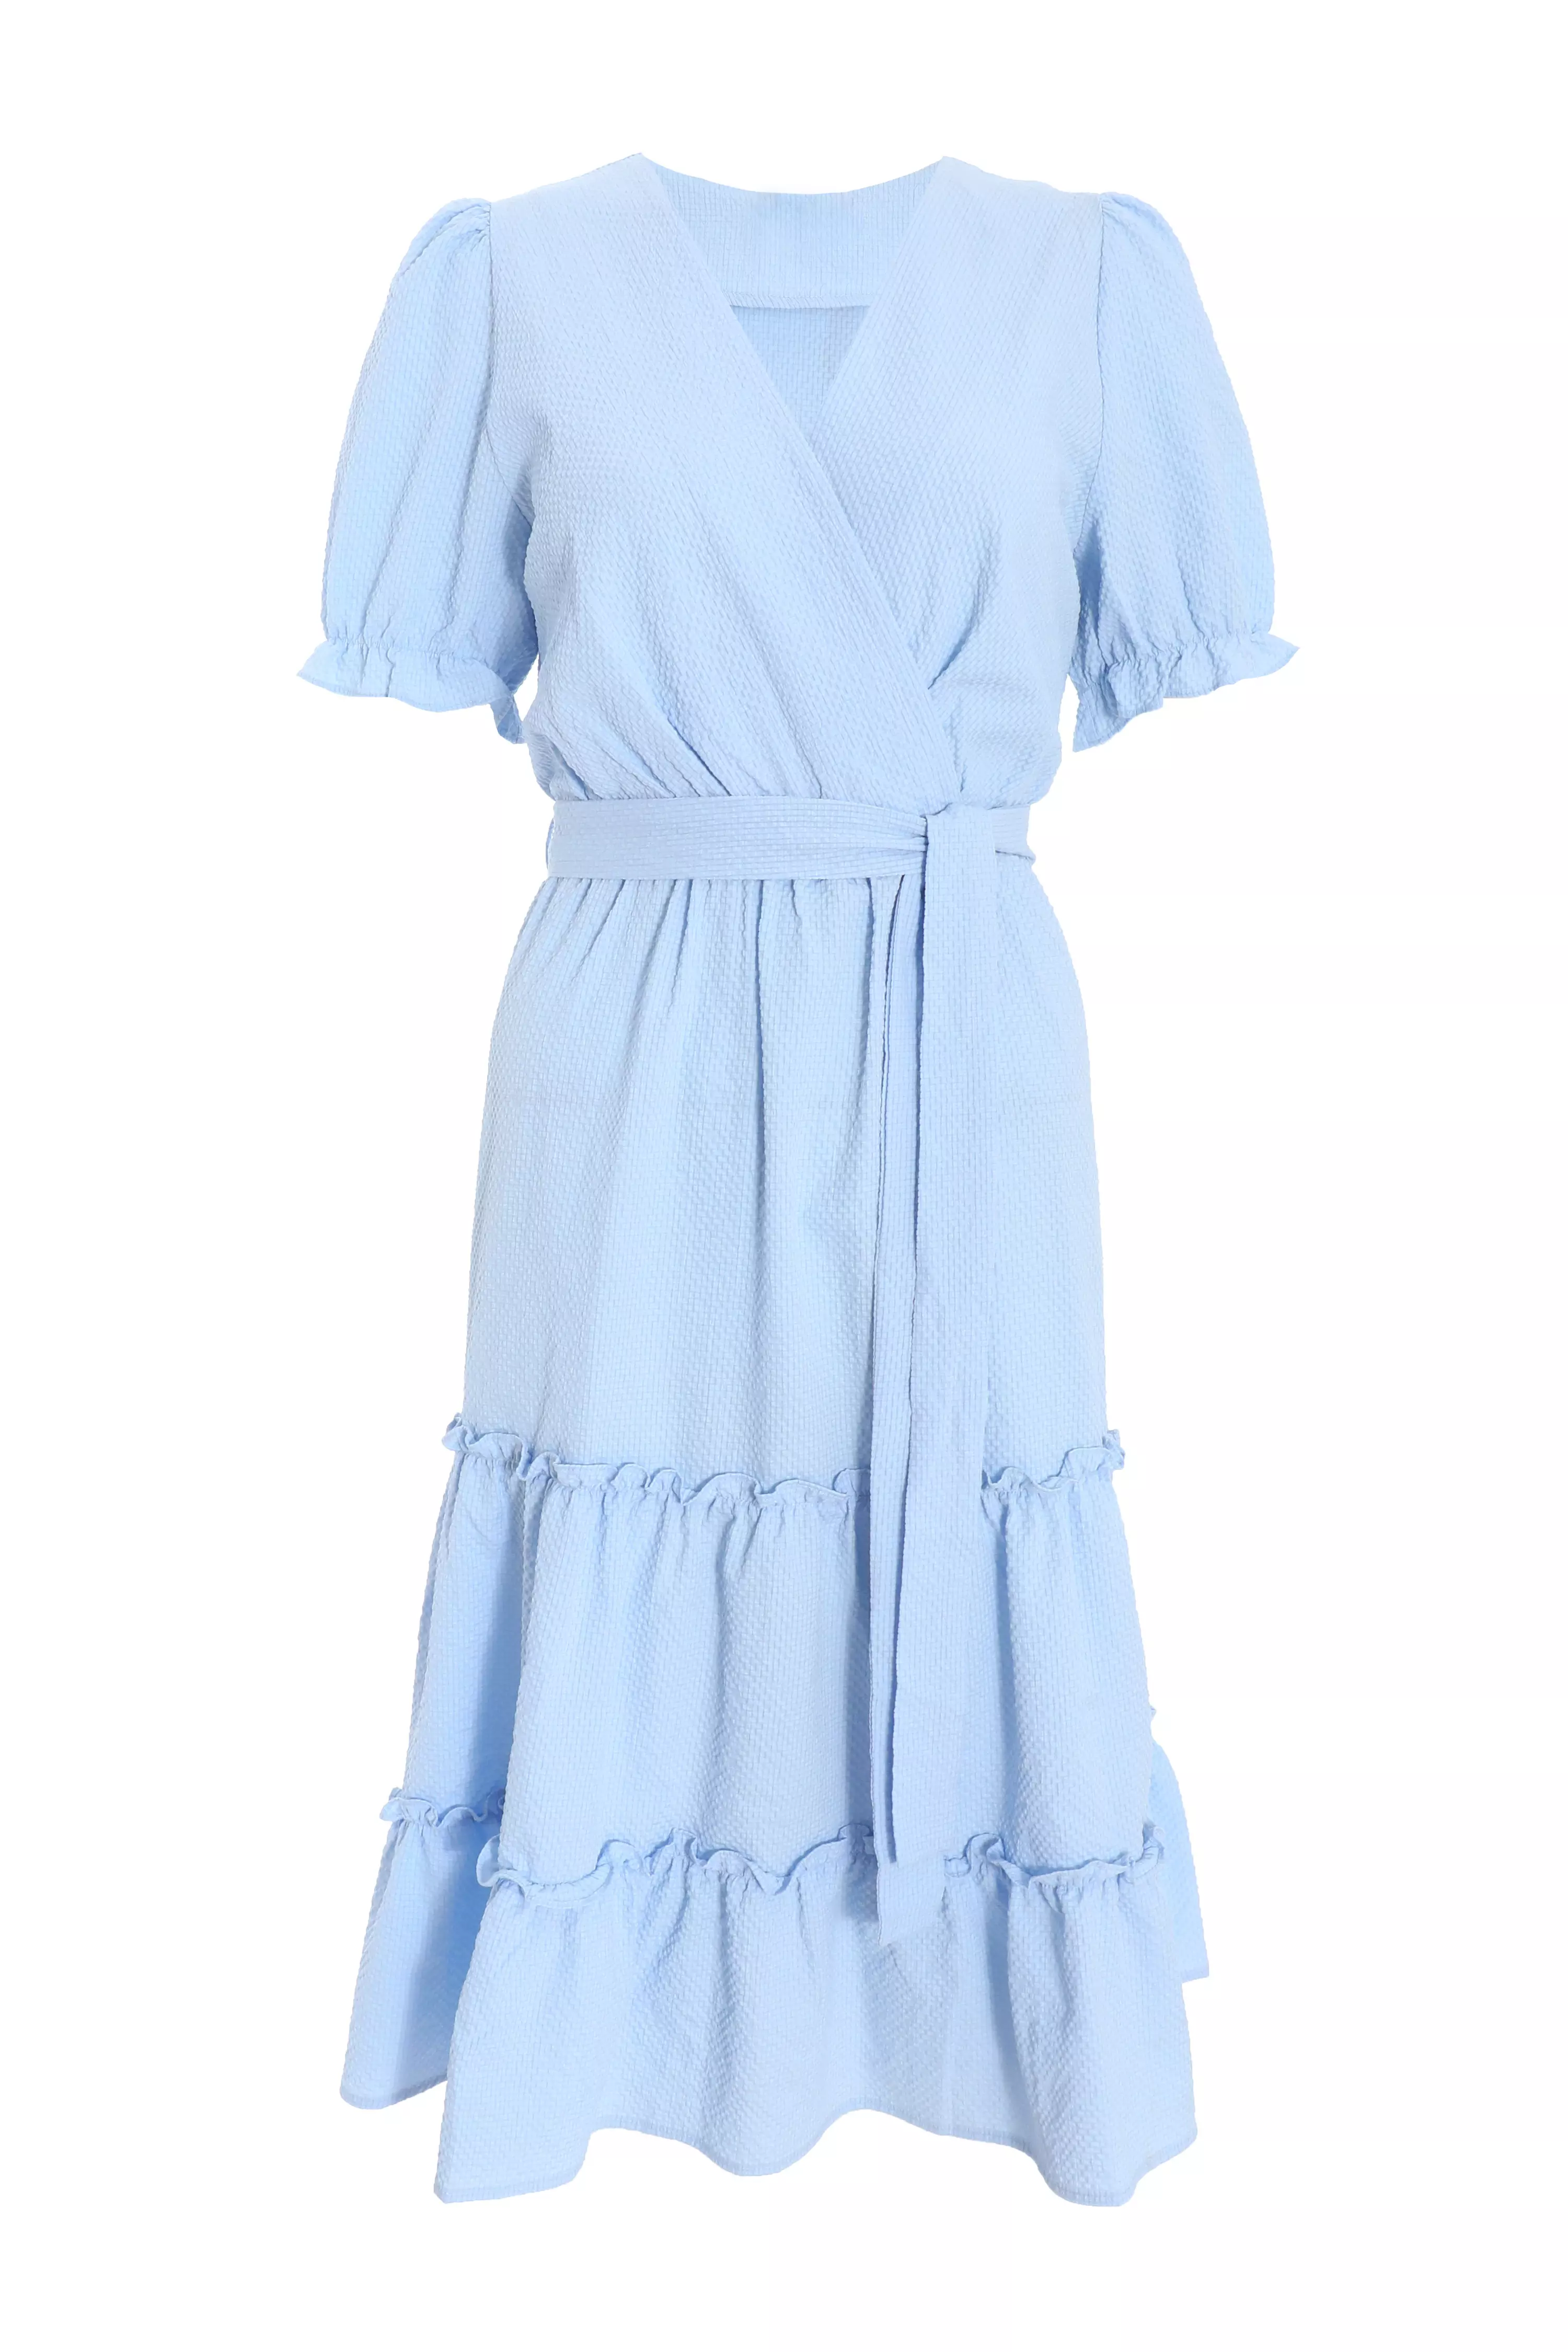 Blue Frill Midi Dress